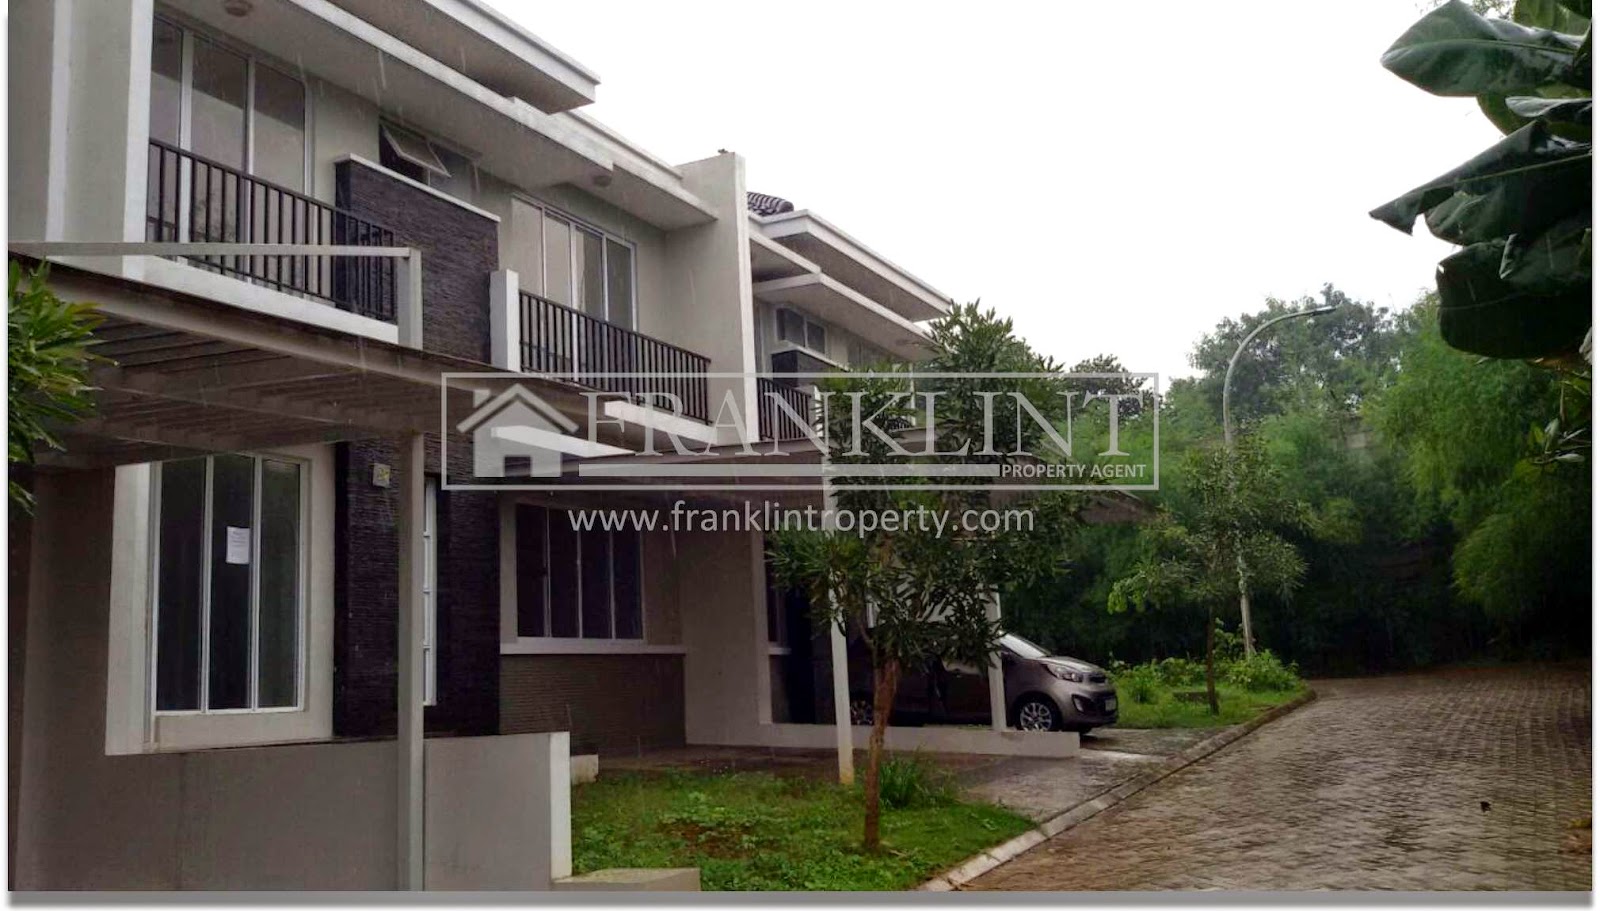 Rumah Baru dijual di Cibubur Country Cikeas Rp.1,6M